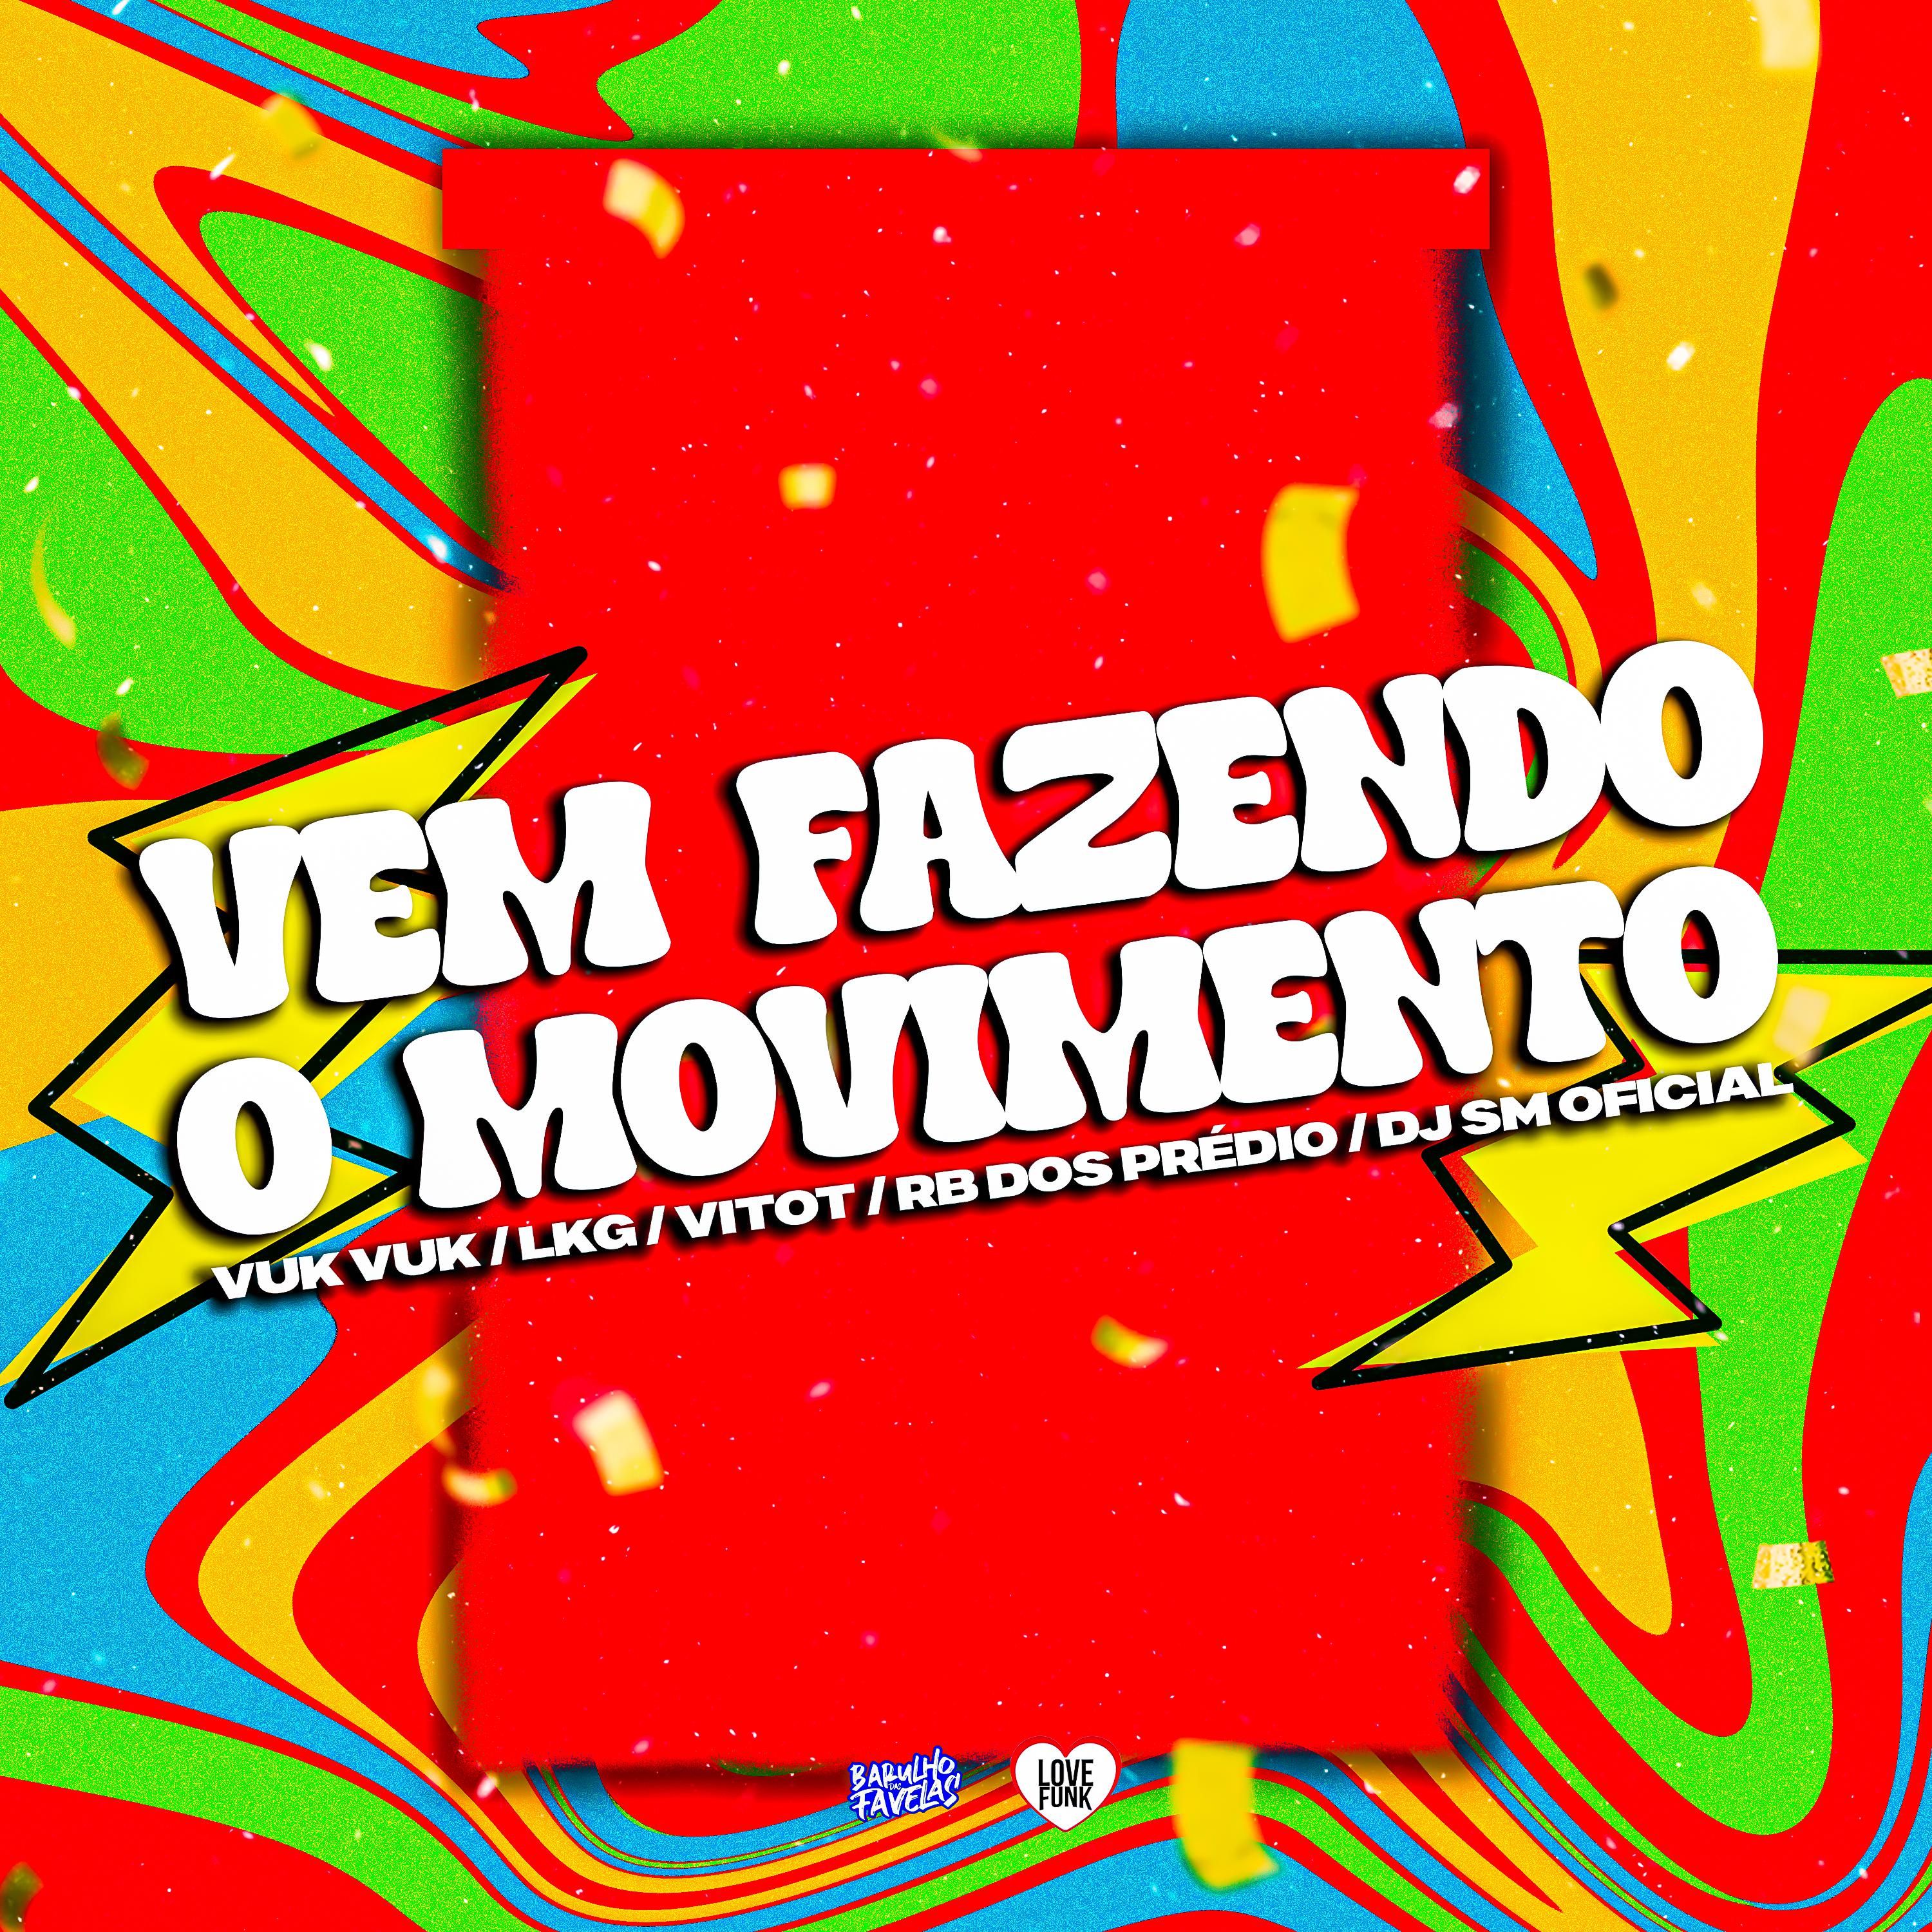 Постер альбома Vem Fazendo o Movimento